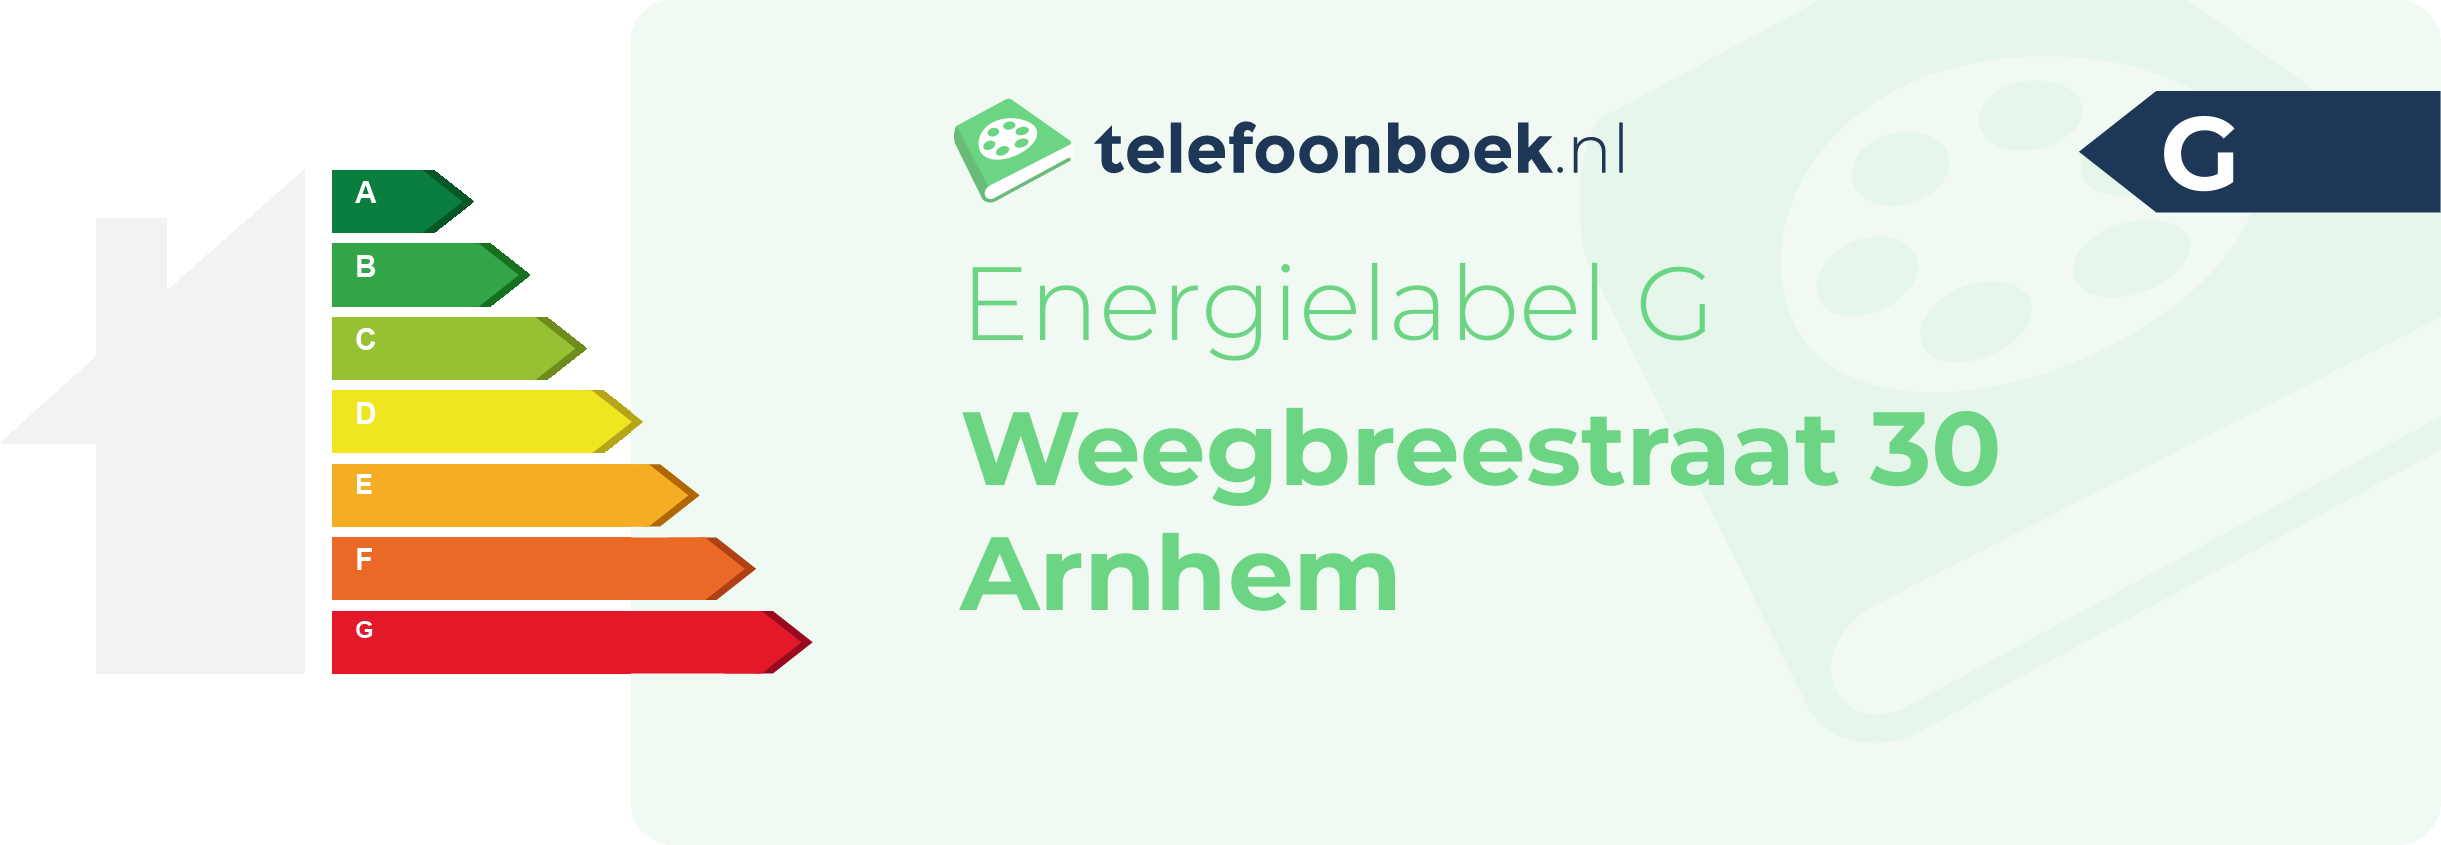 Energielabel Weegbreestraat 30 Arnhem